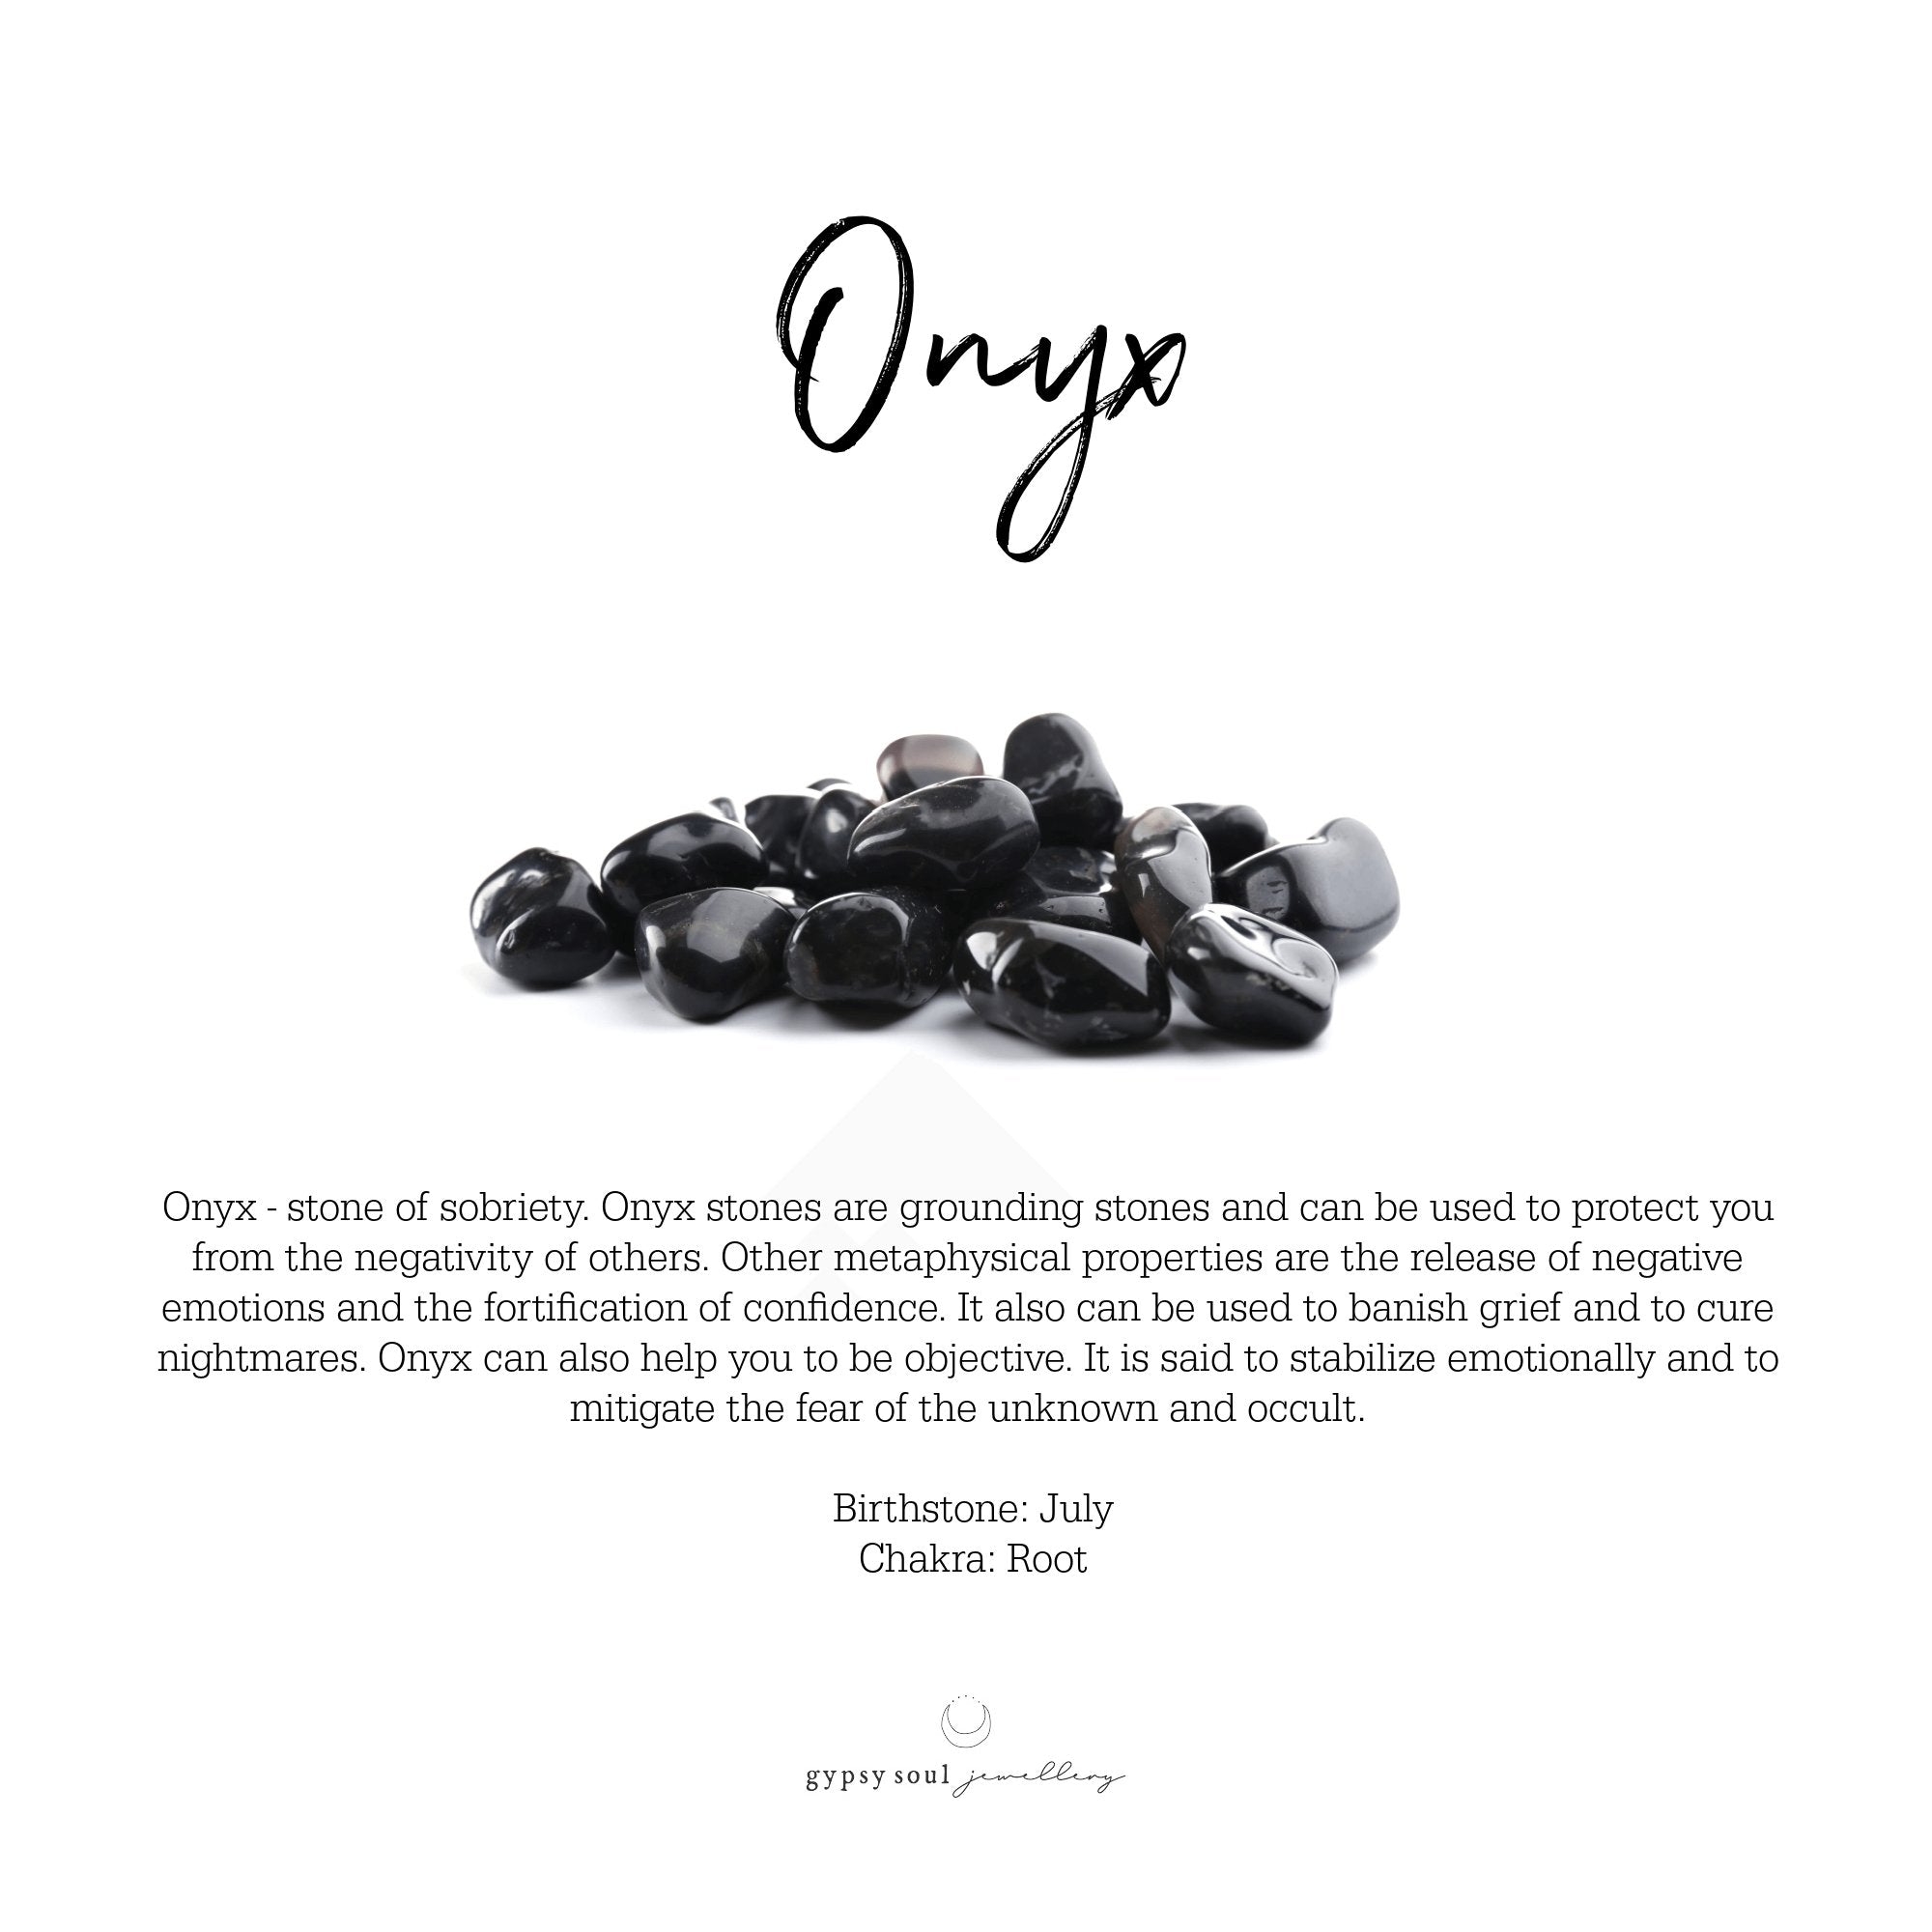 Onyx and Black Lava Protection Bracelet - Gypsy Soul Jewellery